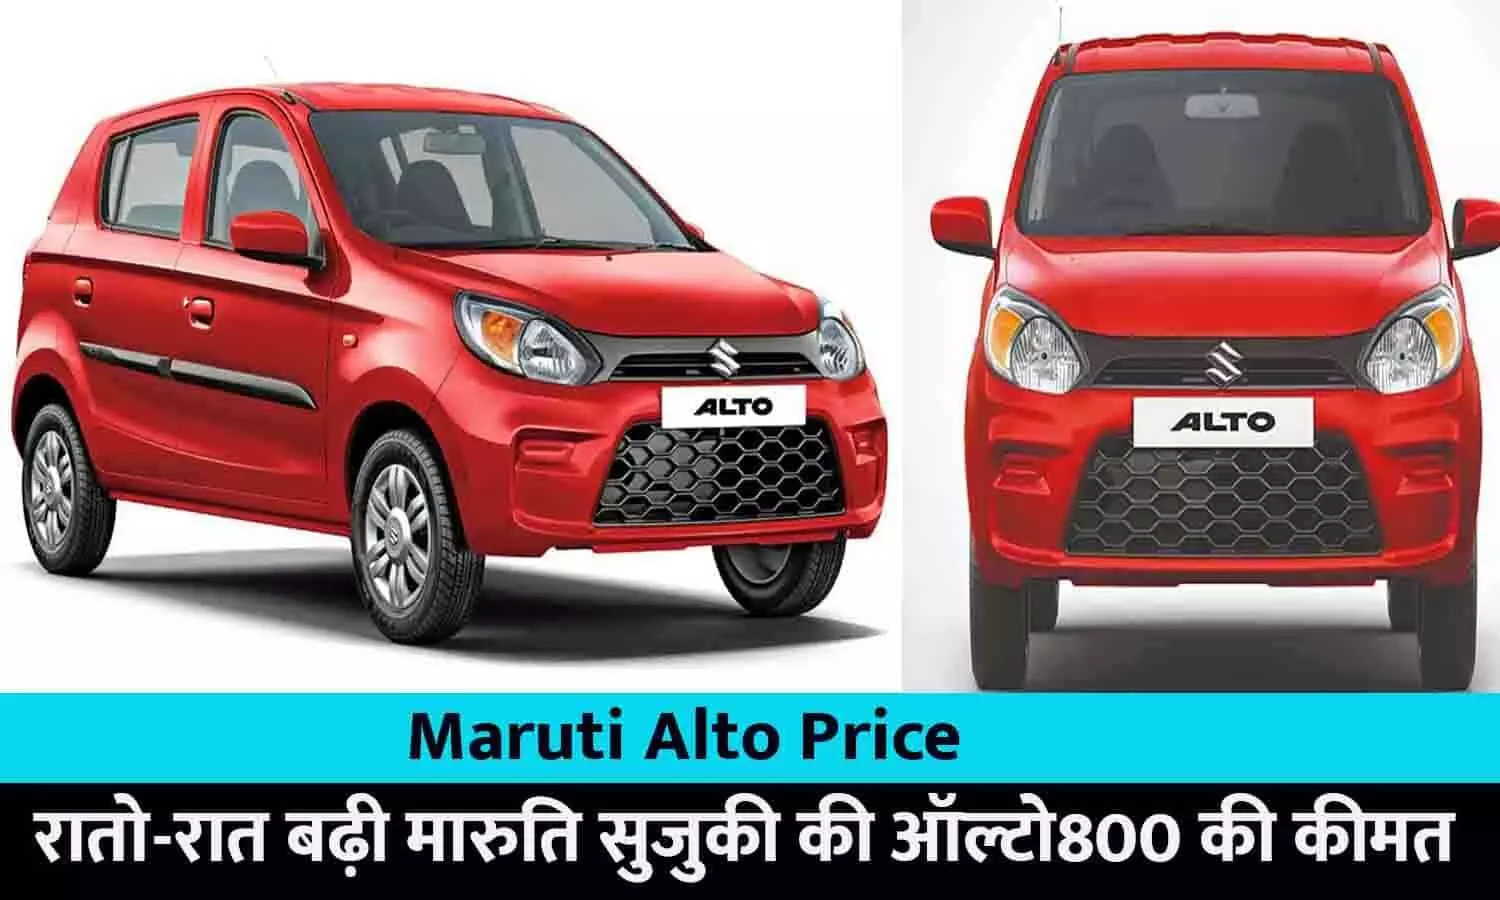 Maruti Alto Price Hike In Hindi